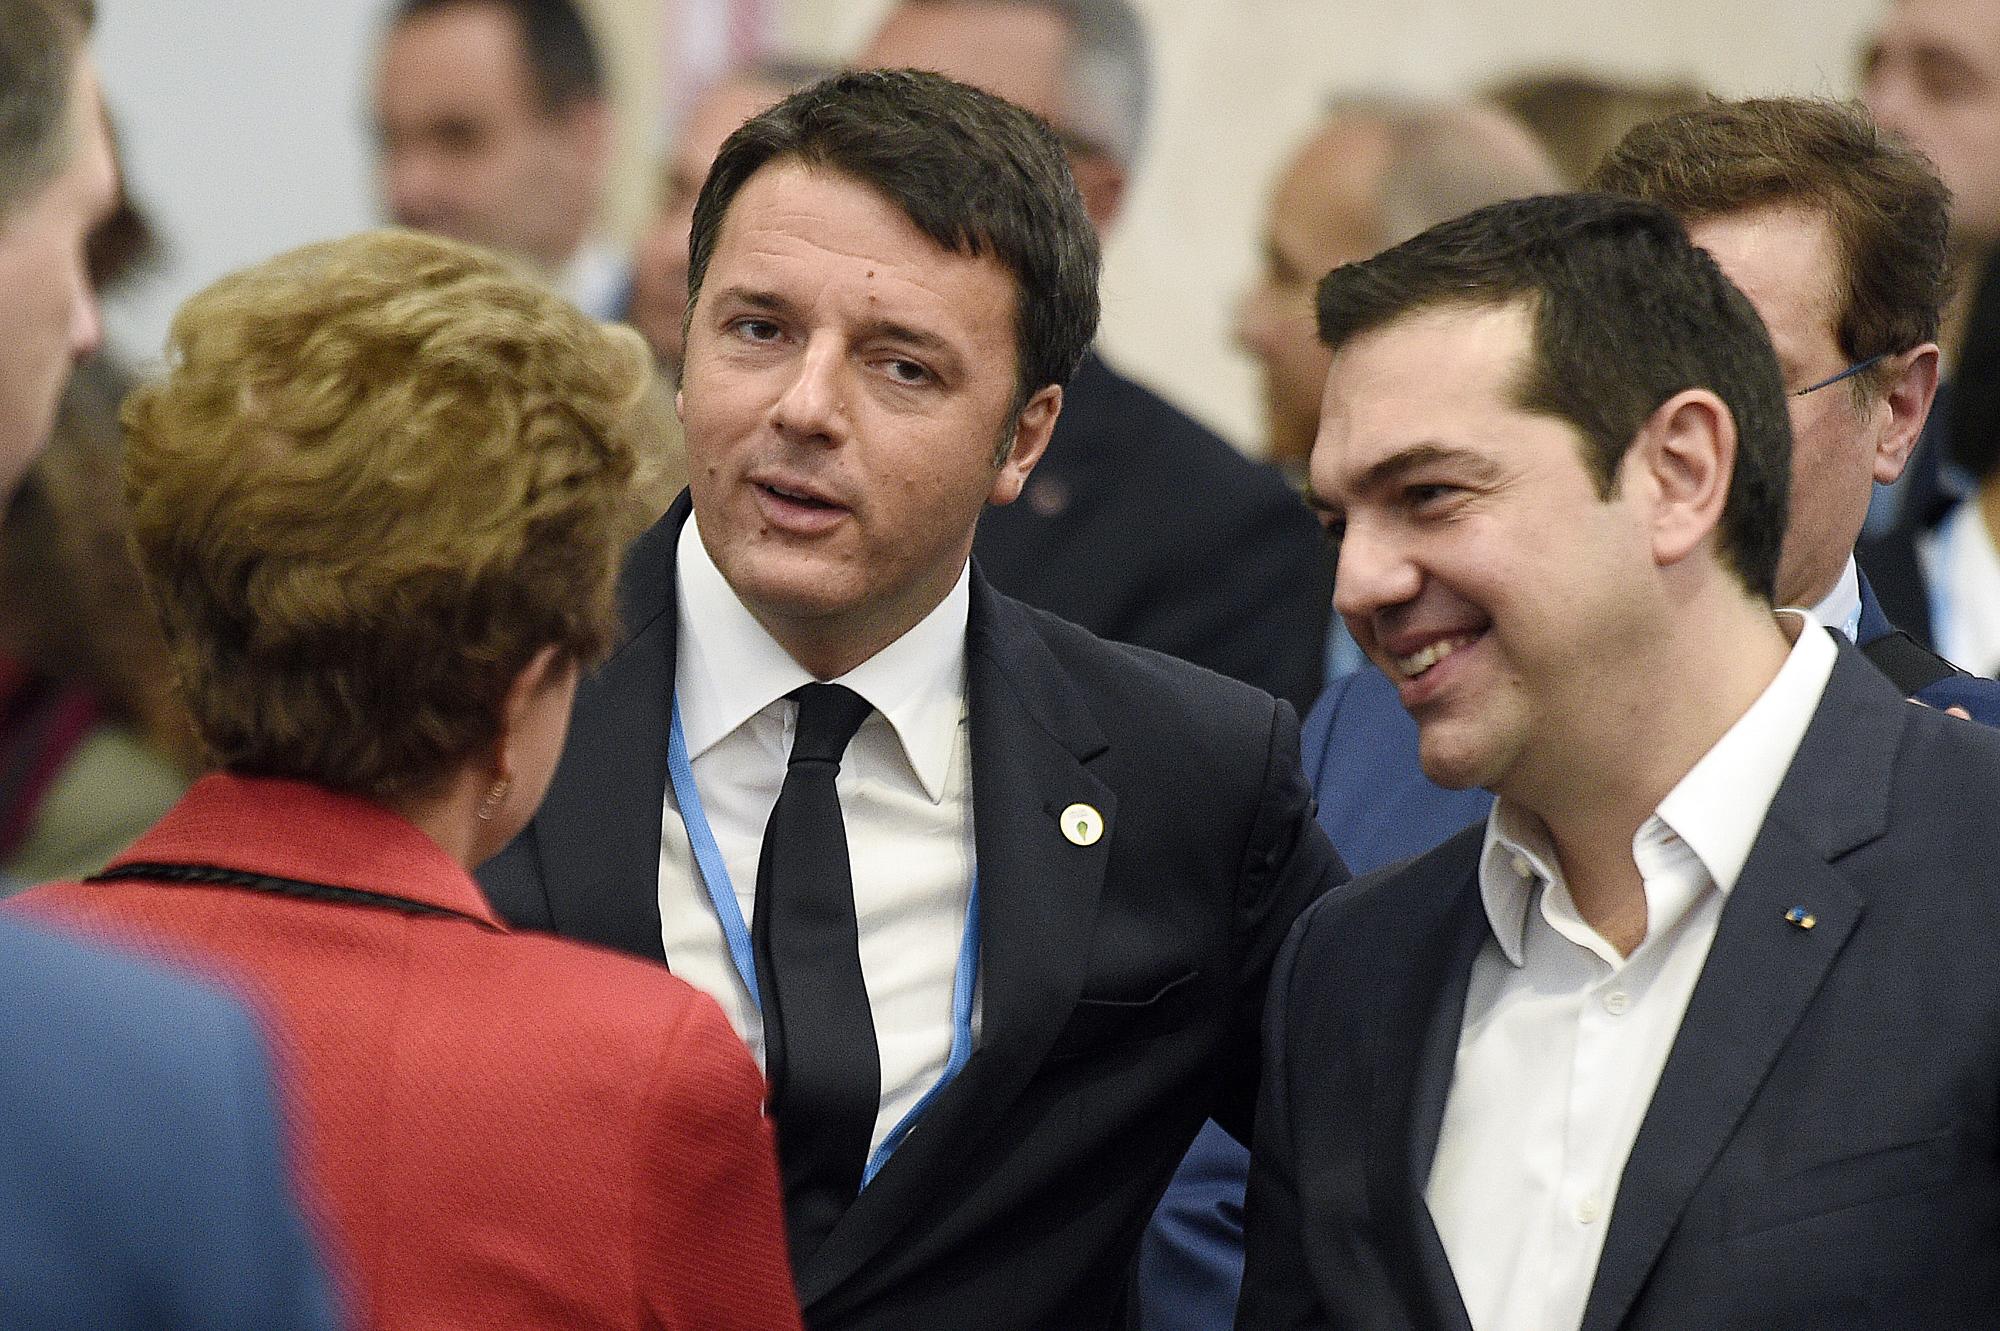 La presidenta de Brasil Dilma Rousseff platica con el primer ministro italiano Matteo Renzi, al centro, y el primer ministro griego Alexis Tsipras en el marco de la conferencia de cambio climático de la ONU (COP21), en Le Bourget, a las afueras de París, el lunes 30 de noviembre de 2015. Más de 150 líderes mundiales participan en la primera jornada de la cumbre, que terminará el 11 de diciembre y donde buscan un amplio acuerdo en materia de protección al medioambiente.